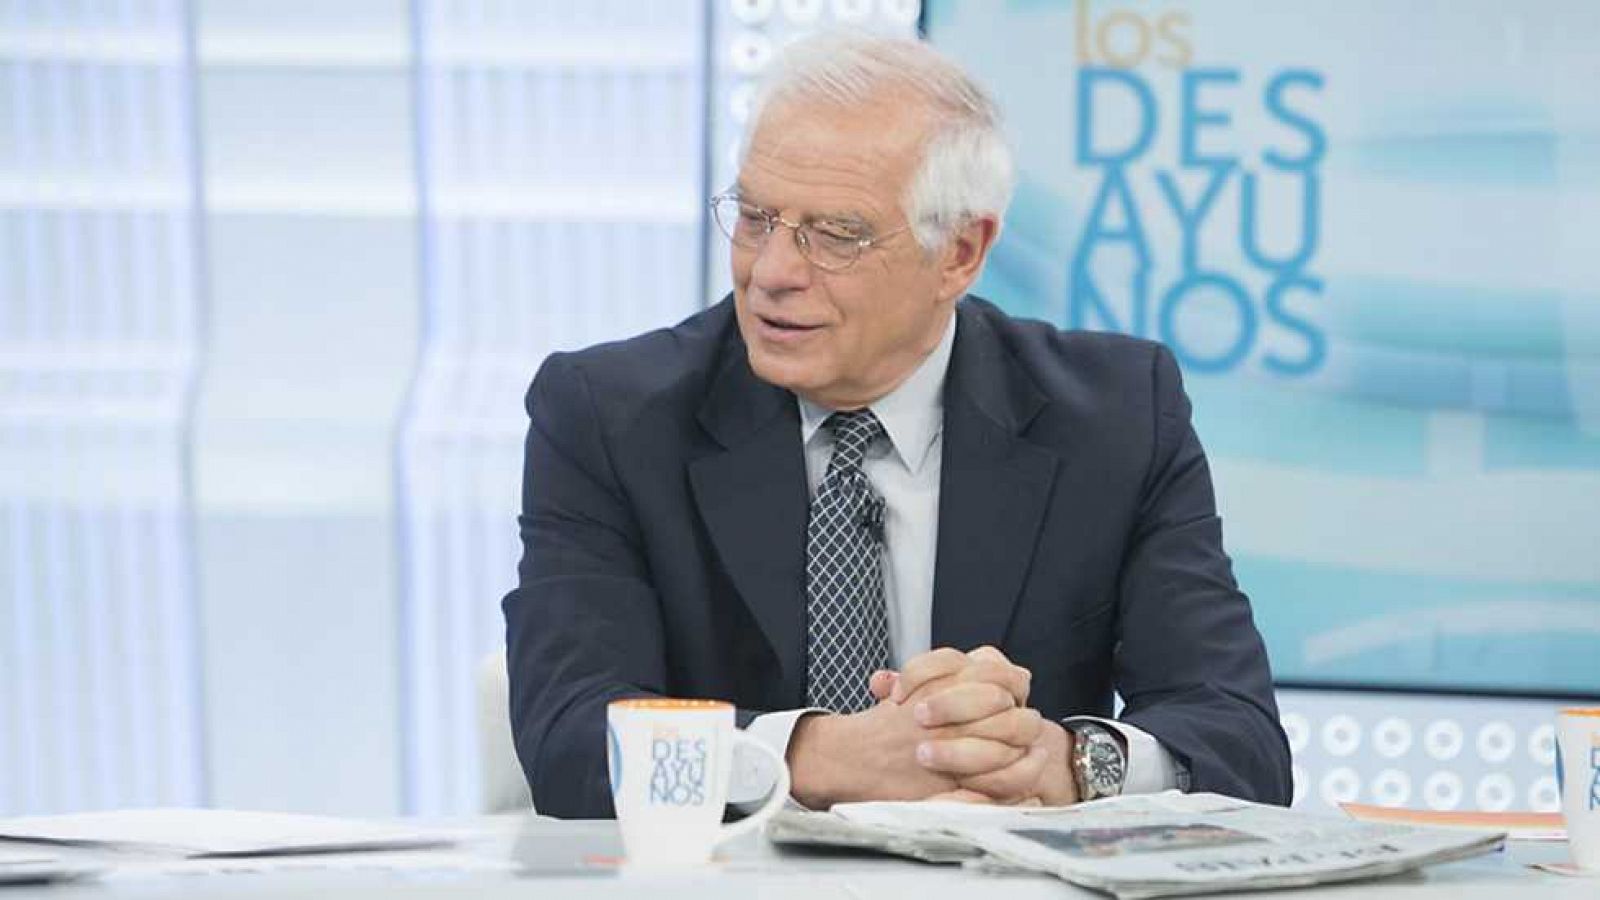 Los desayunos de TVE - Josep Borrell, expresidente del Parlamento europeo y exministro socialista